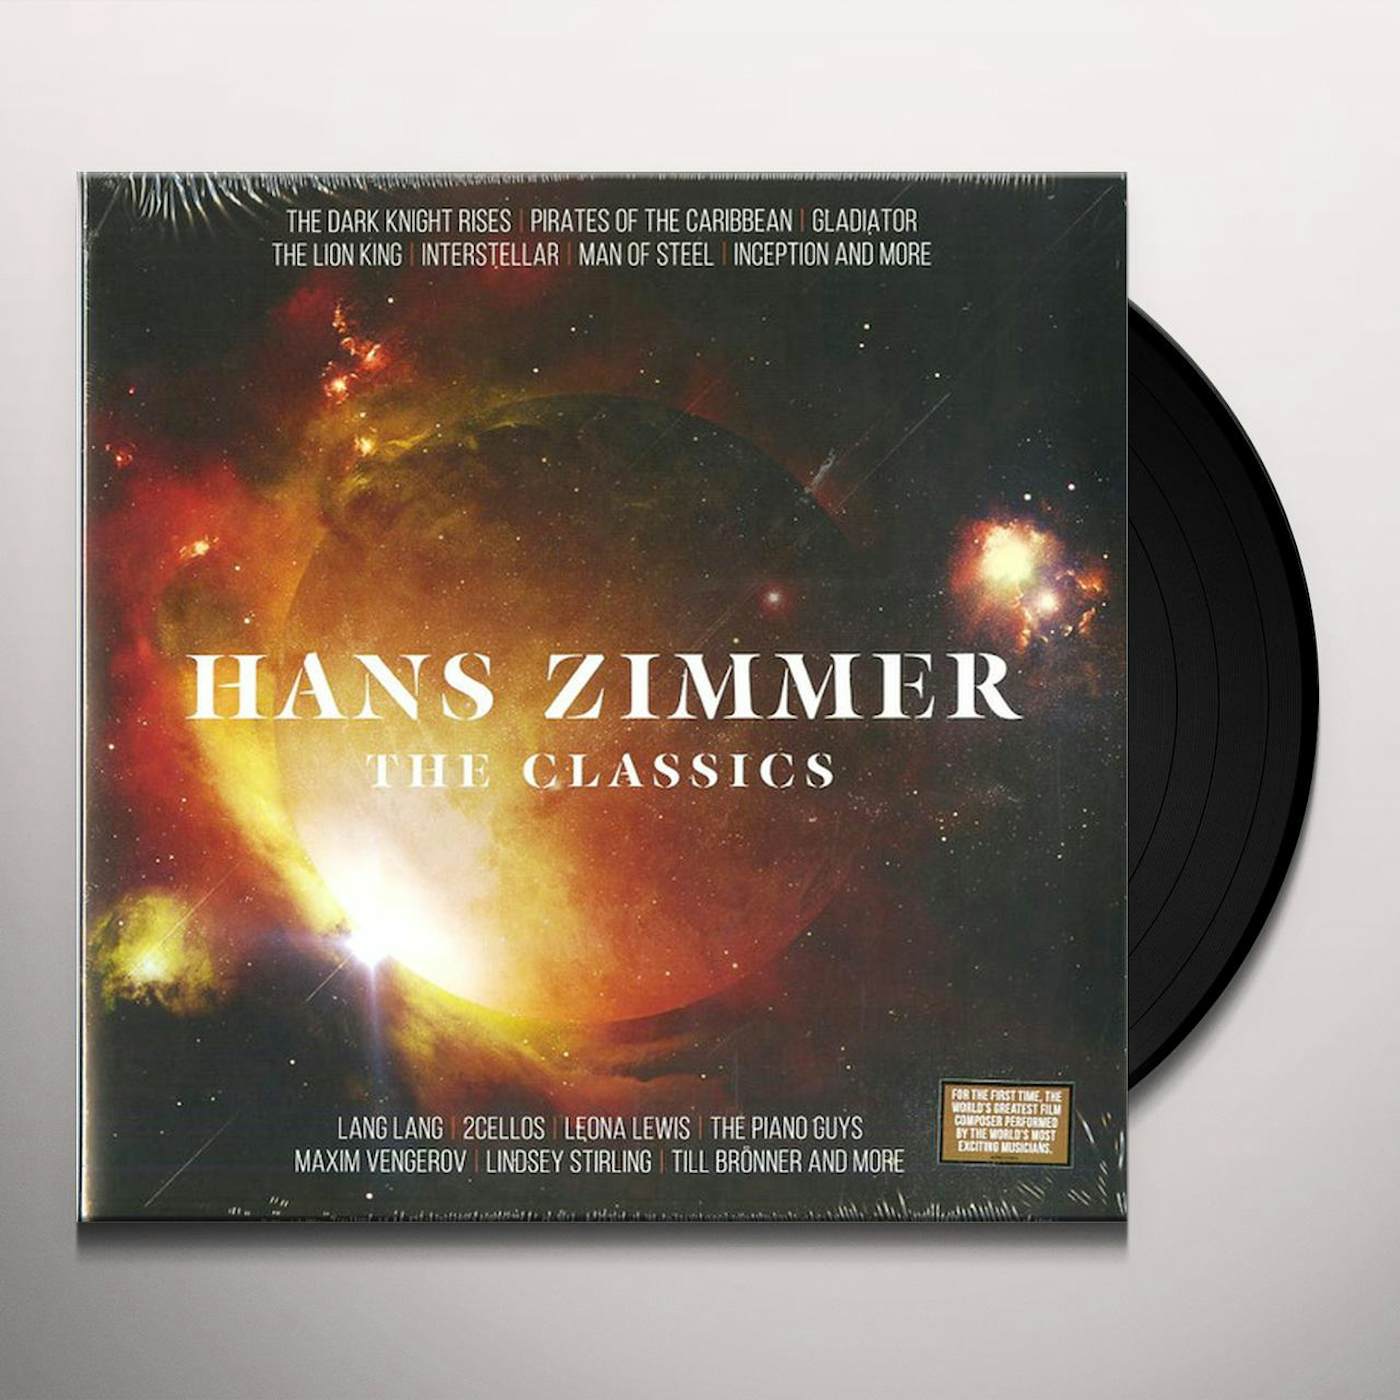 Hans Zimmer The World of Hans Zimmer - A Symphonic Celebration (3 LP) -  Muziker